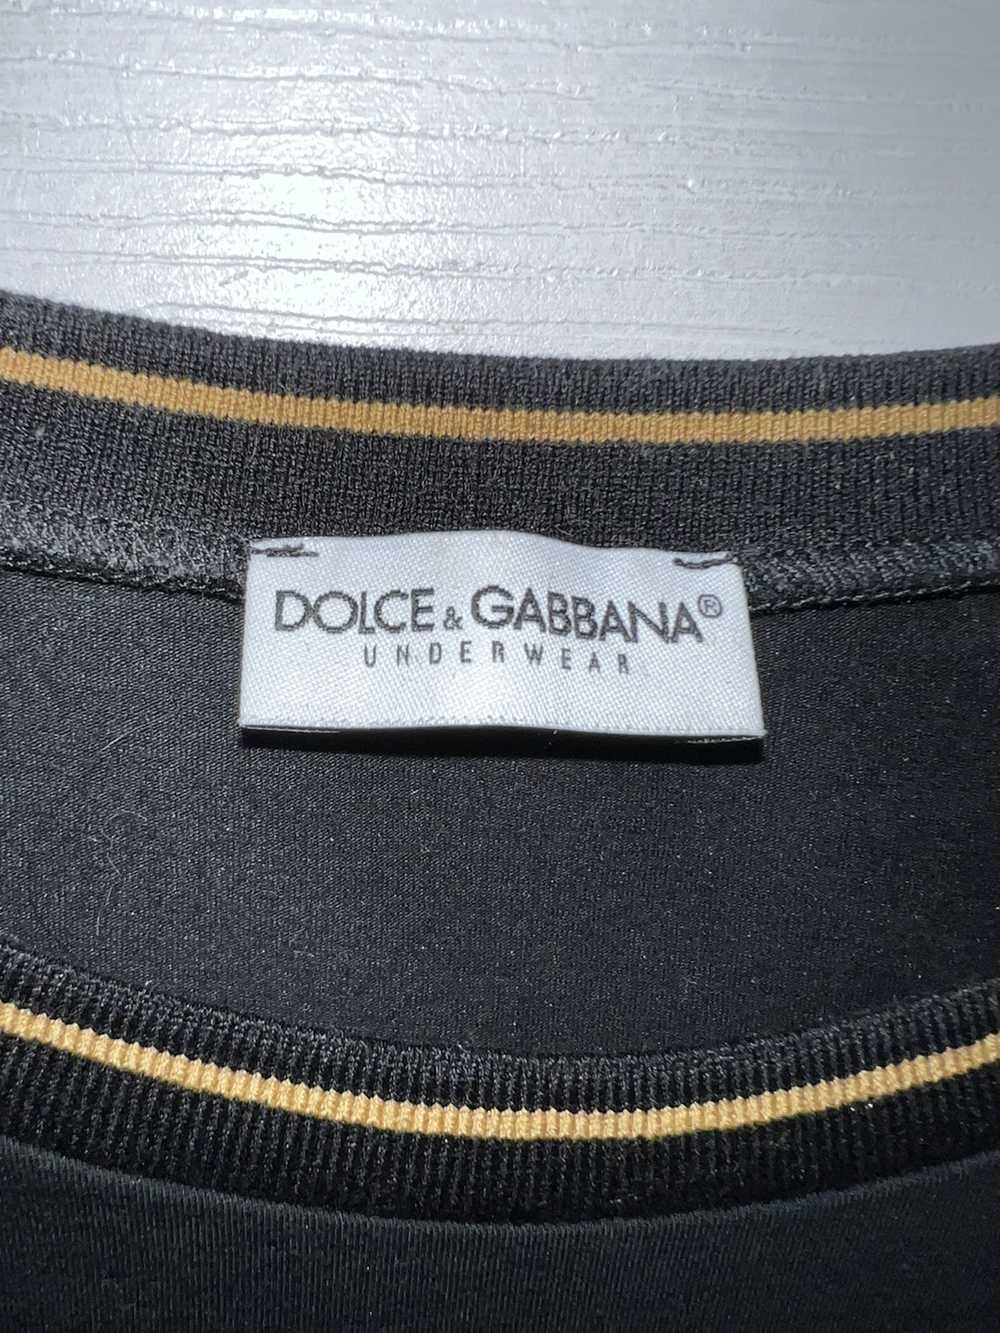 Dolce & Gabbana Dolce & Gabbana Underwear t-shirt - image 3